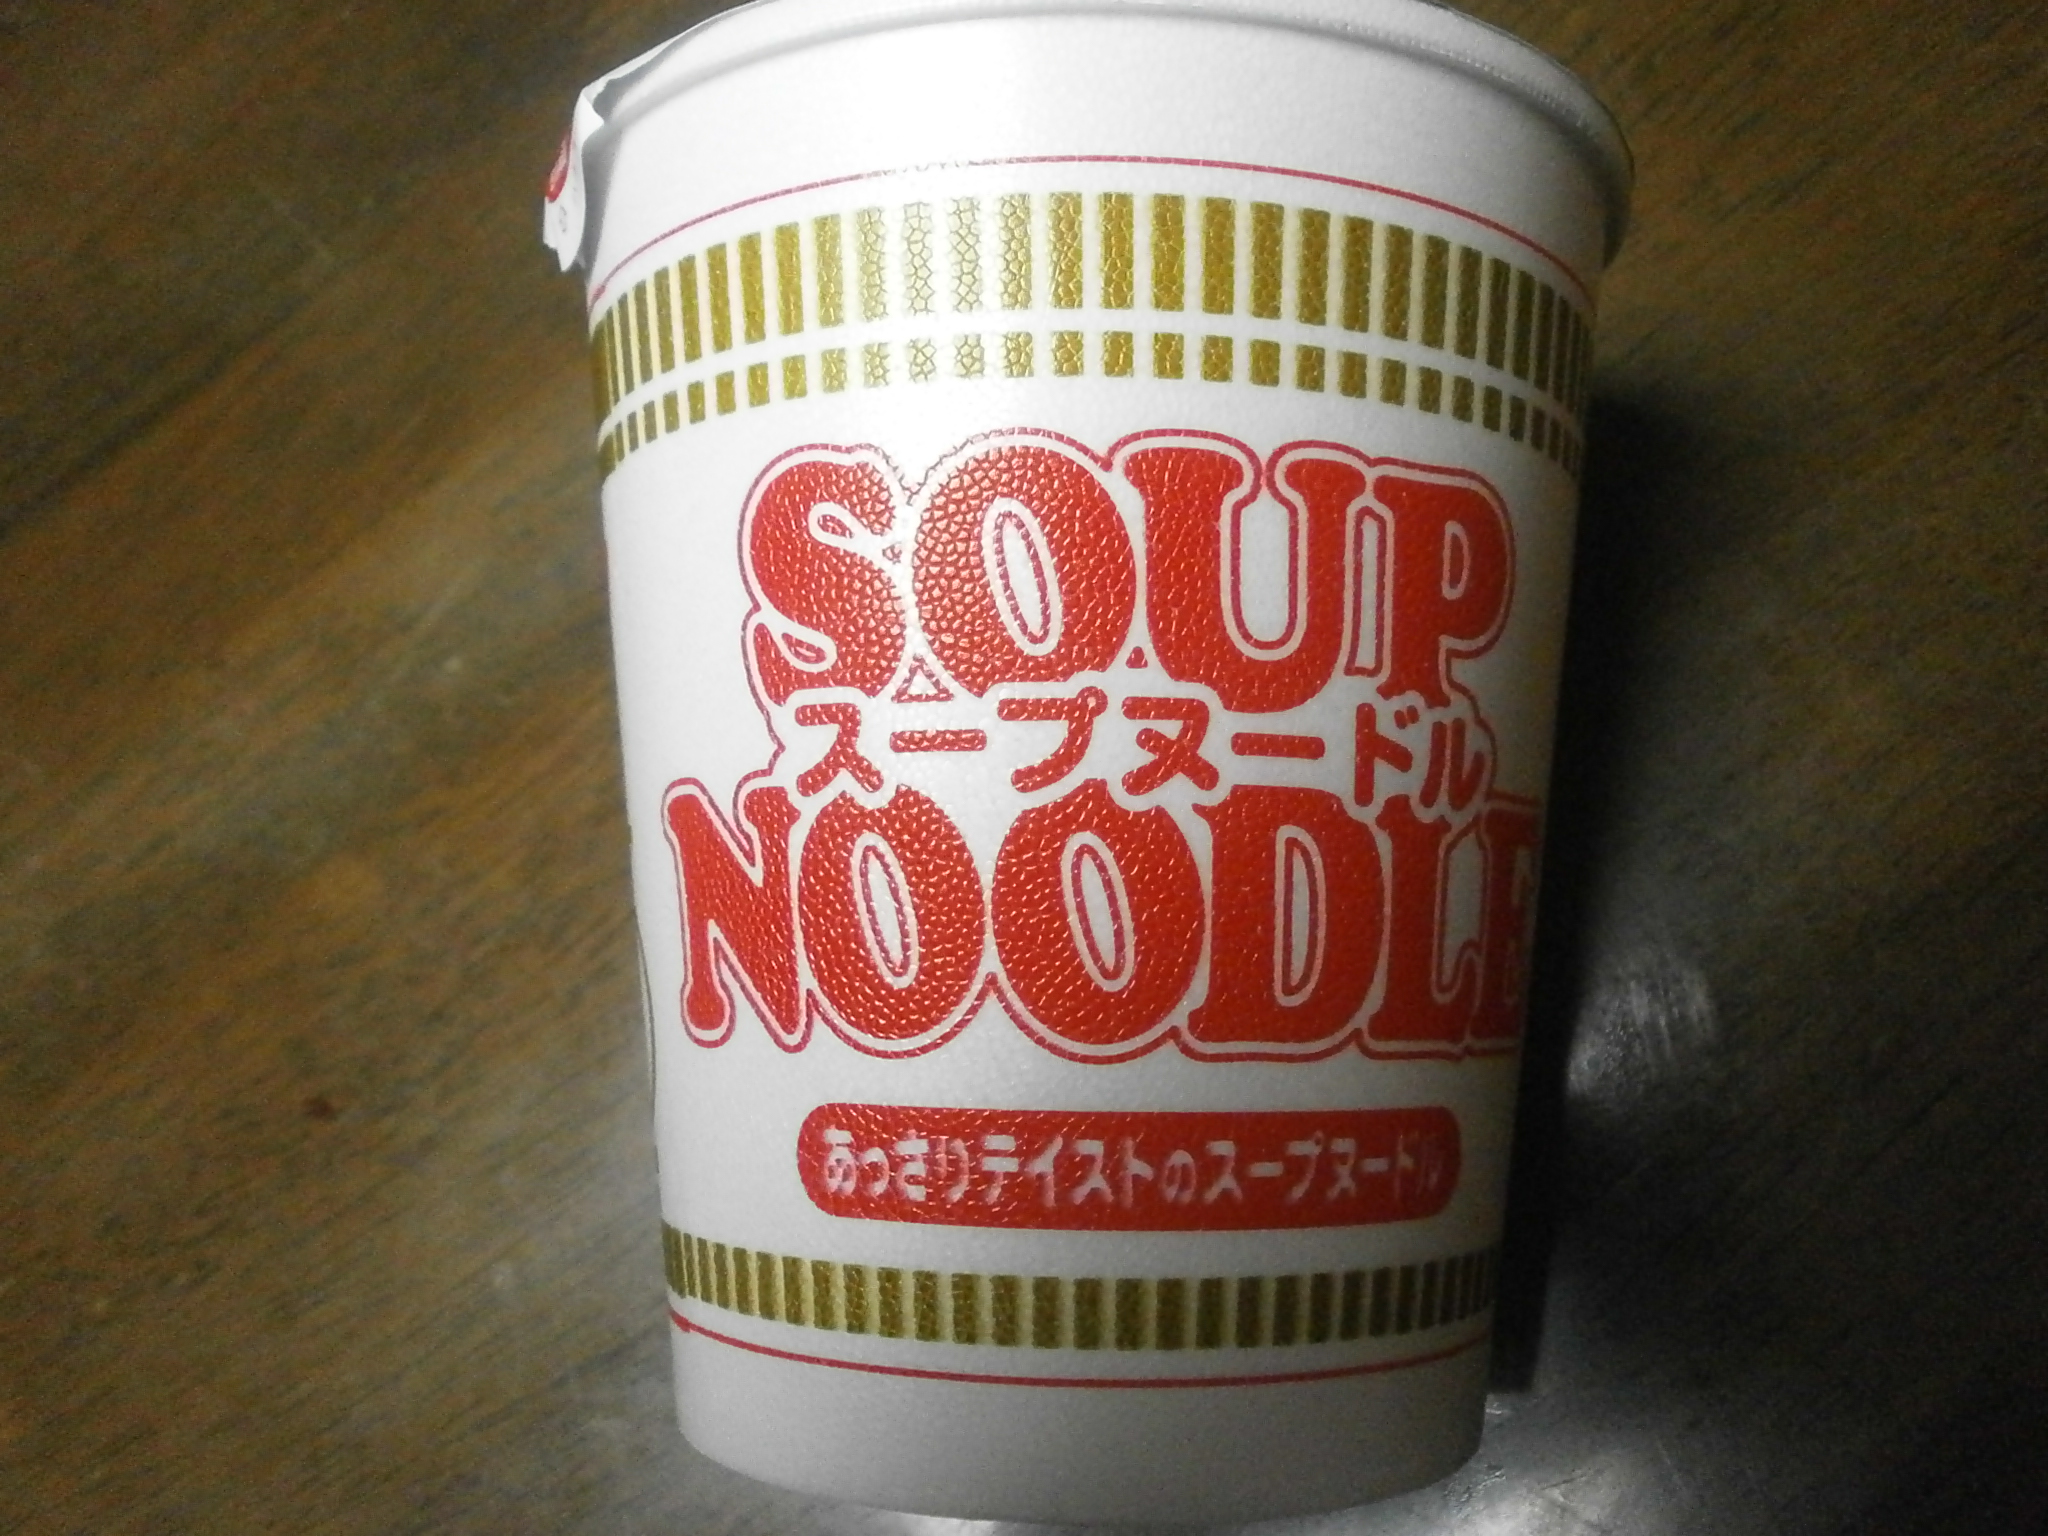 Which high-calorie? Noodle soup? Noodle soup (seafood)?